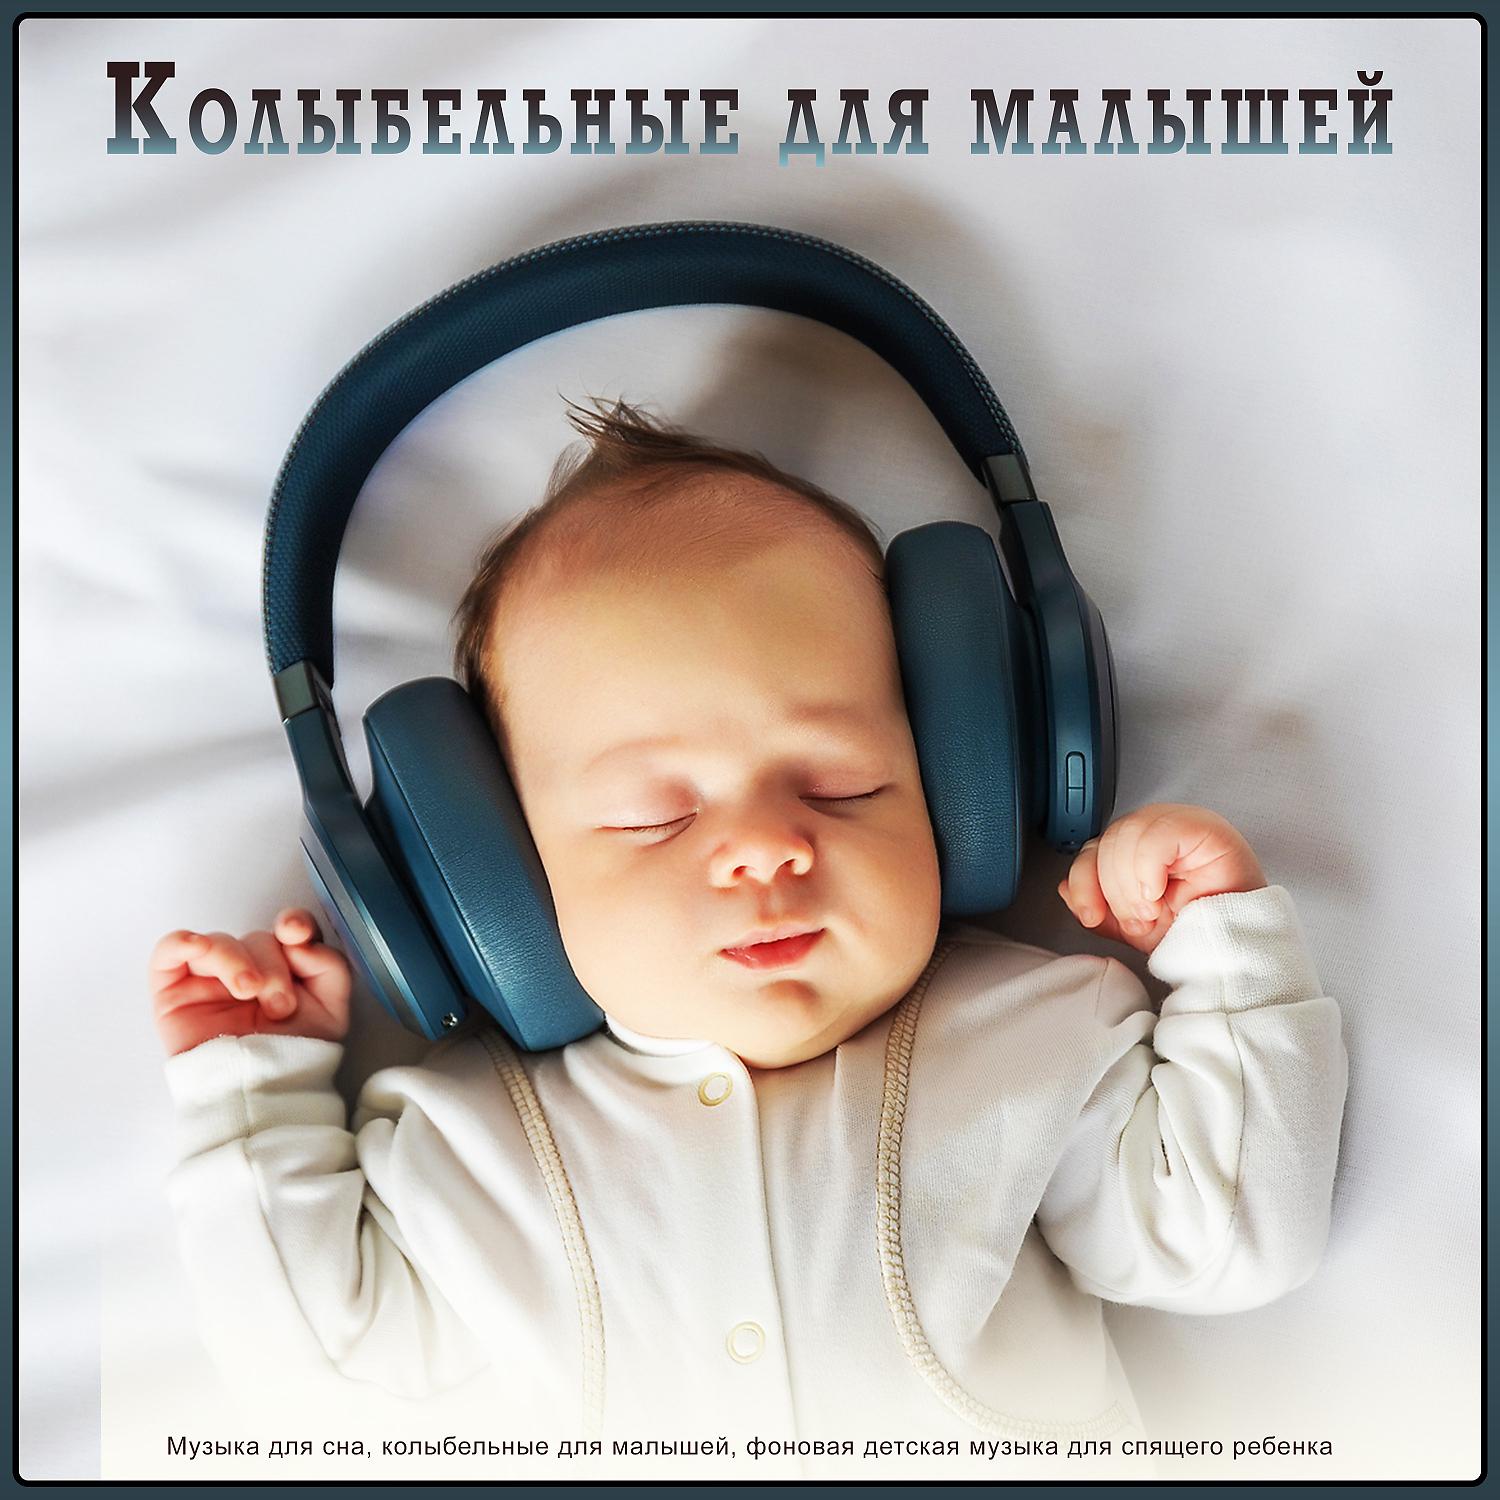 Релакс музыка для сна детей слушать. Музыка для сна младенца. Музыка для сна для малышей. Мелодии для засыпания малышей. Колыбельная для малышей успокаивающая.